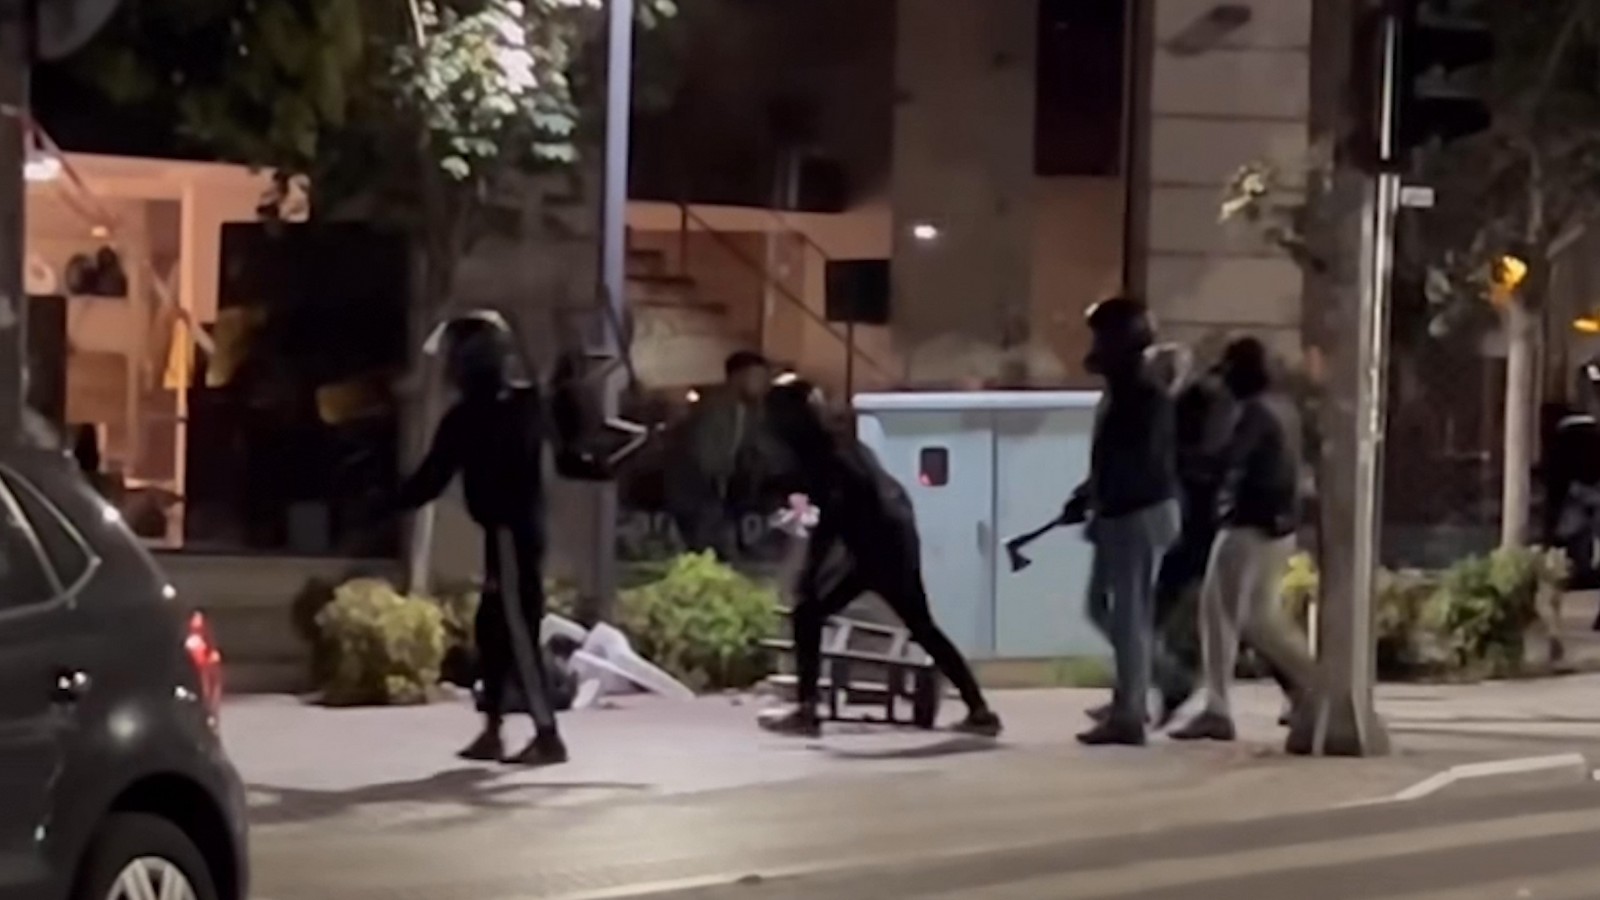 Θεσσαλονίκη: Οπαδική επίθεση σε μπαρ με τσεκούρι και taser – Βίντεο ντοκουμέντο